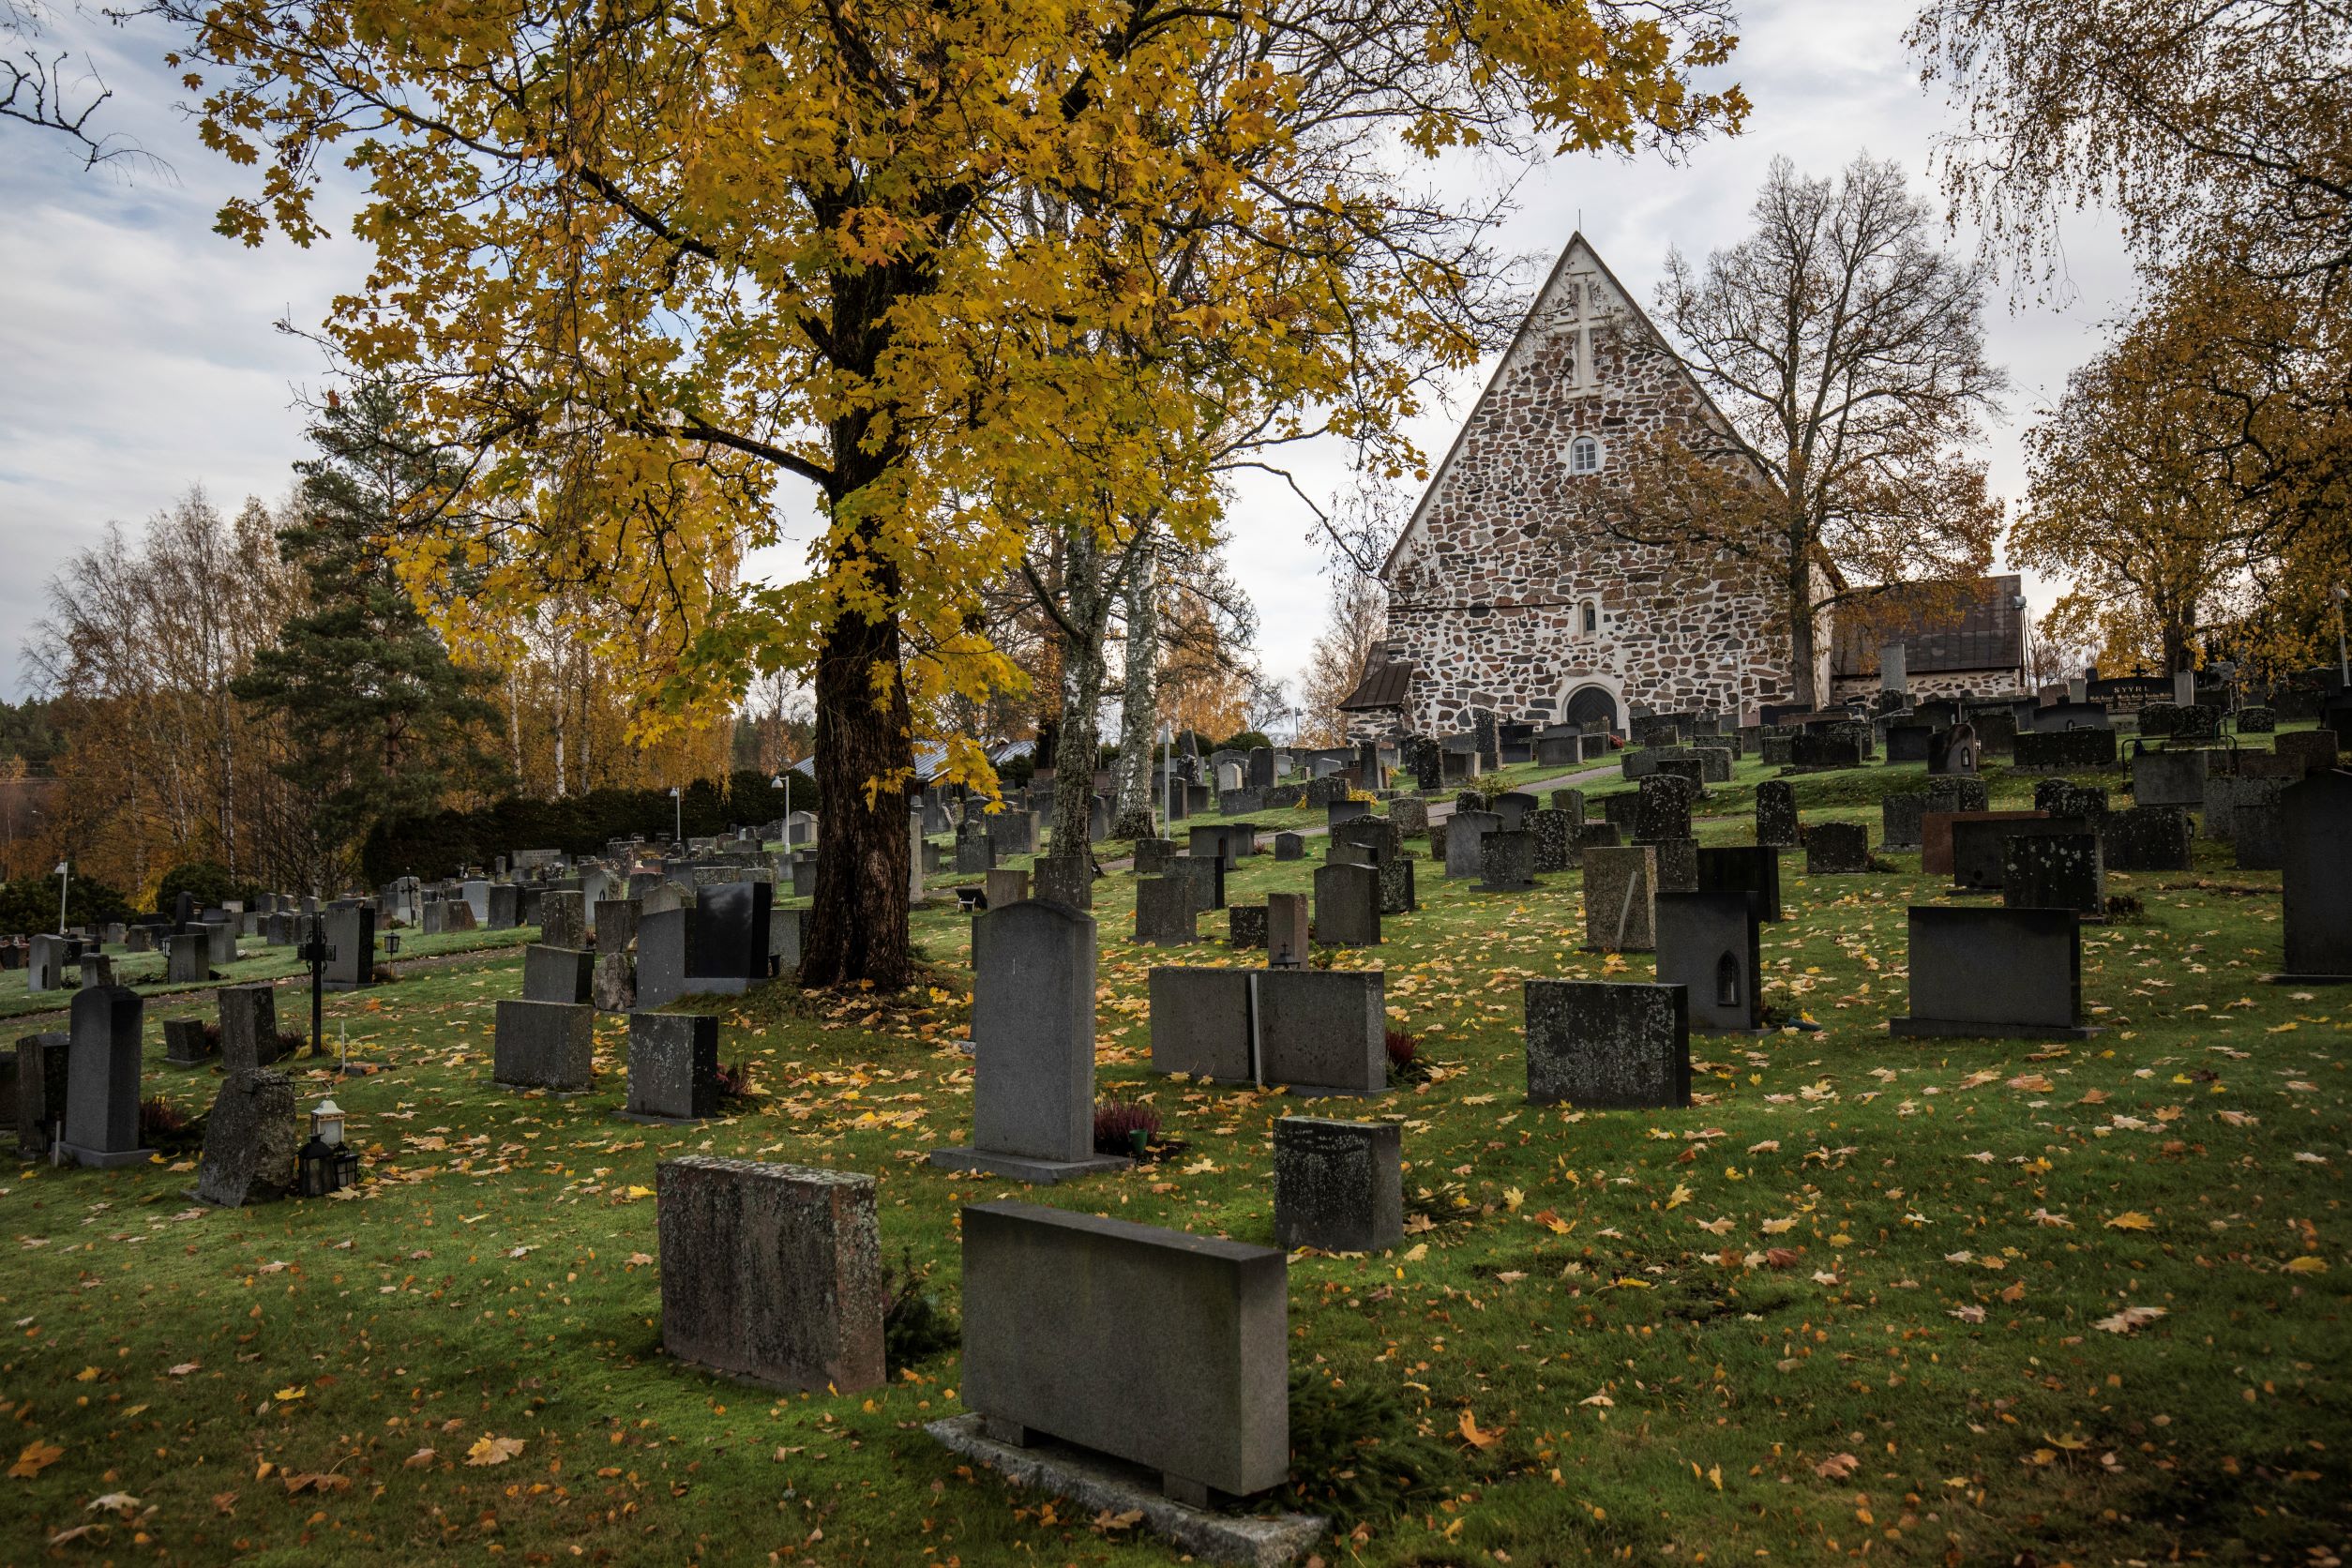 Useita hautoja rinteessä, joiden keskellä on ruskainen lehtipuu. Kuvan takaosassa hautausmaan kummun päällä näkyvät kivinen kirkko ja sen asehuone. Maassa on paljon lehtiä.